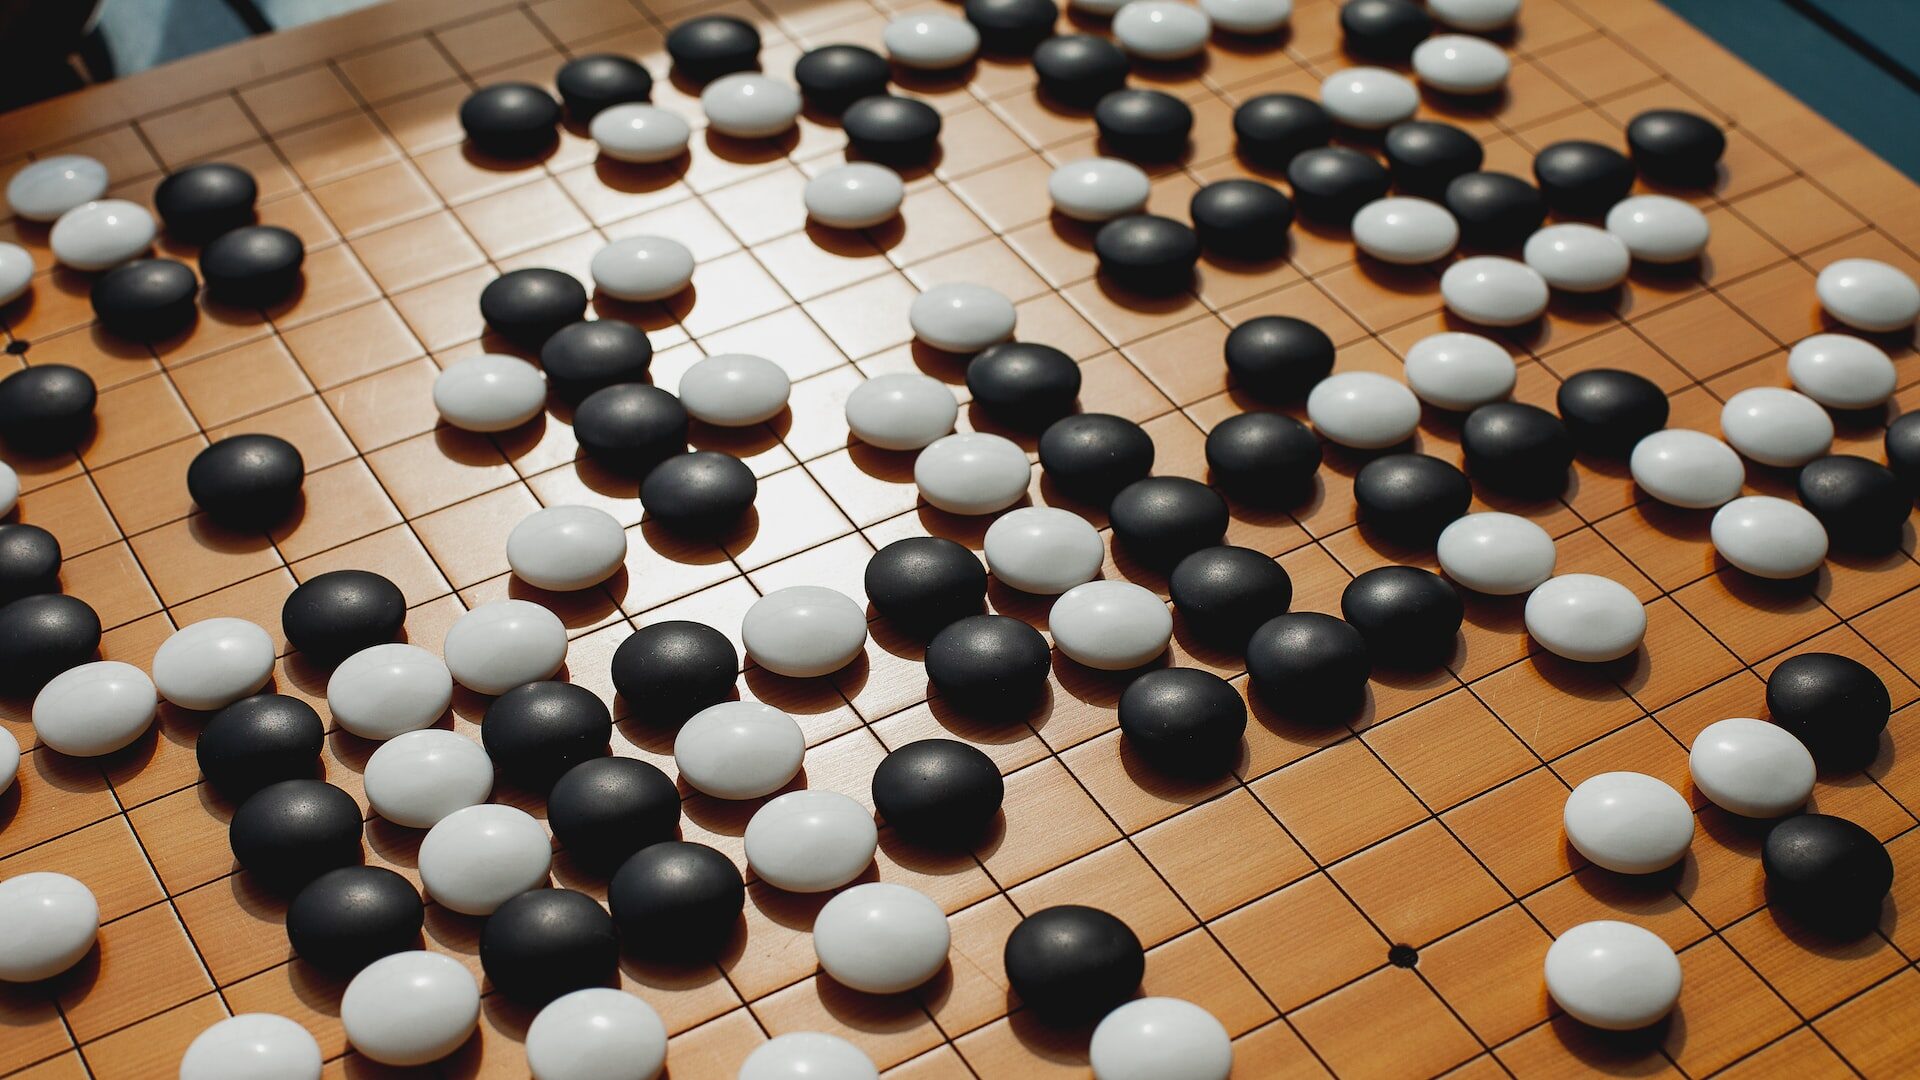 Começa duelo entre melhor jogador de Go do mundo e Google AlphaGo, Tecnologia